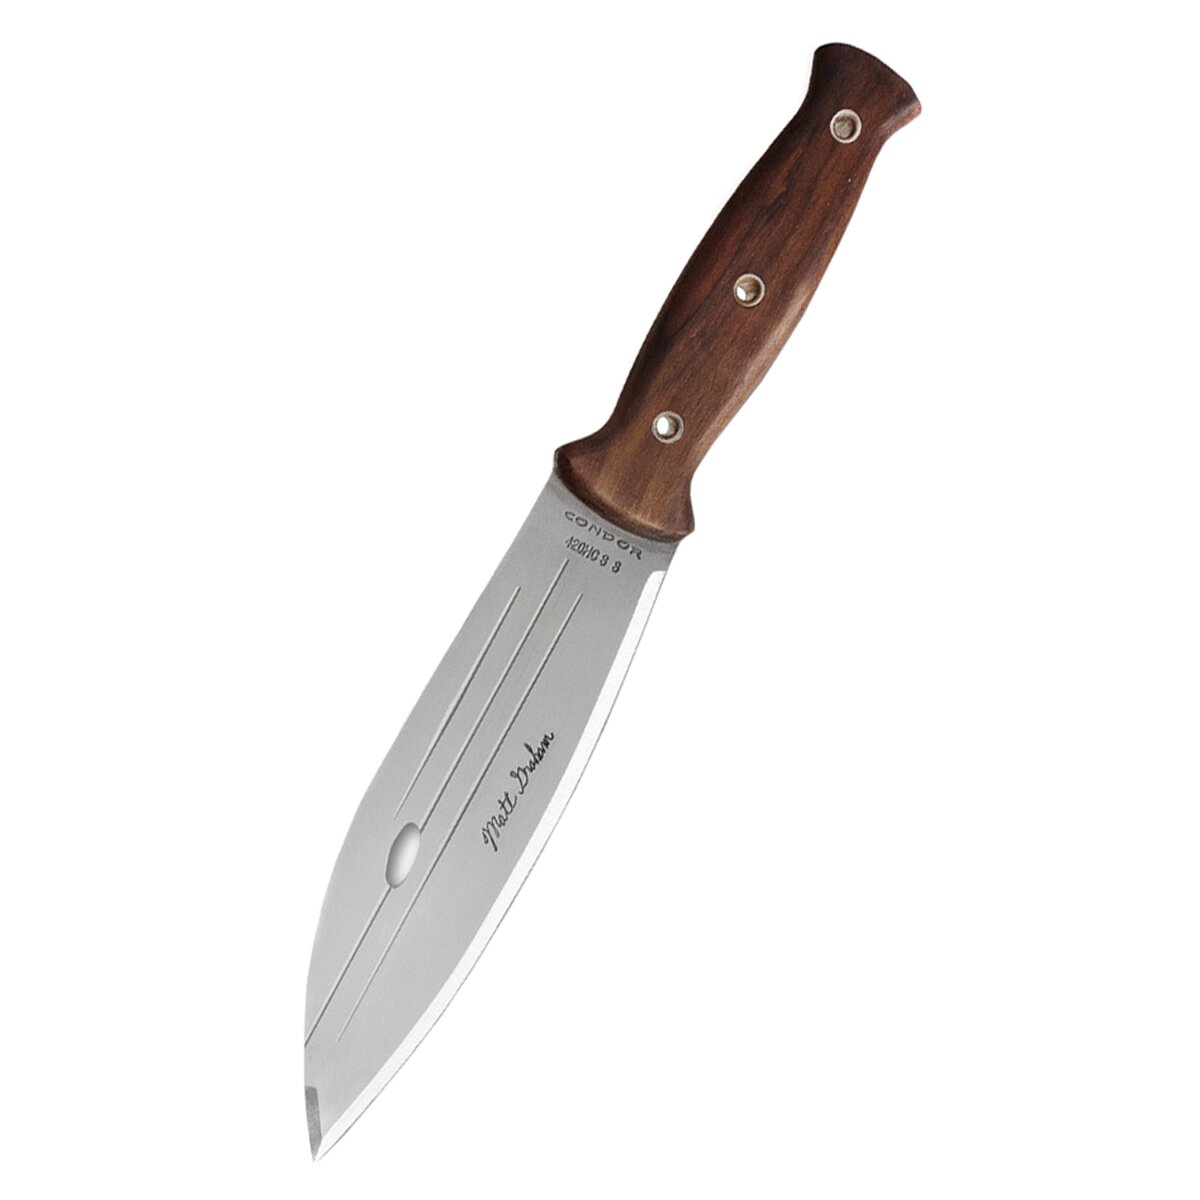 Primitive Bush Knife, Hunting Knife, Condor